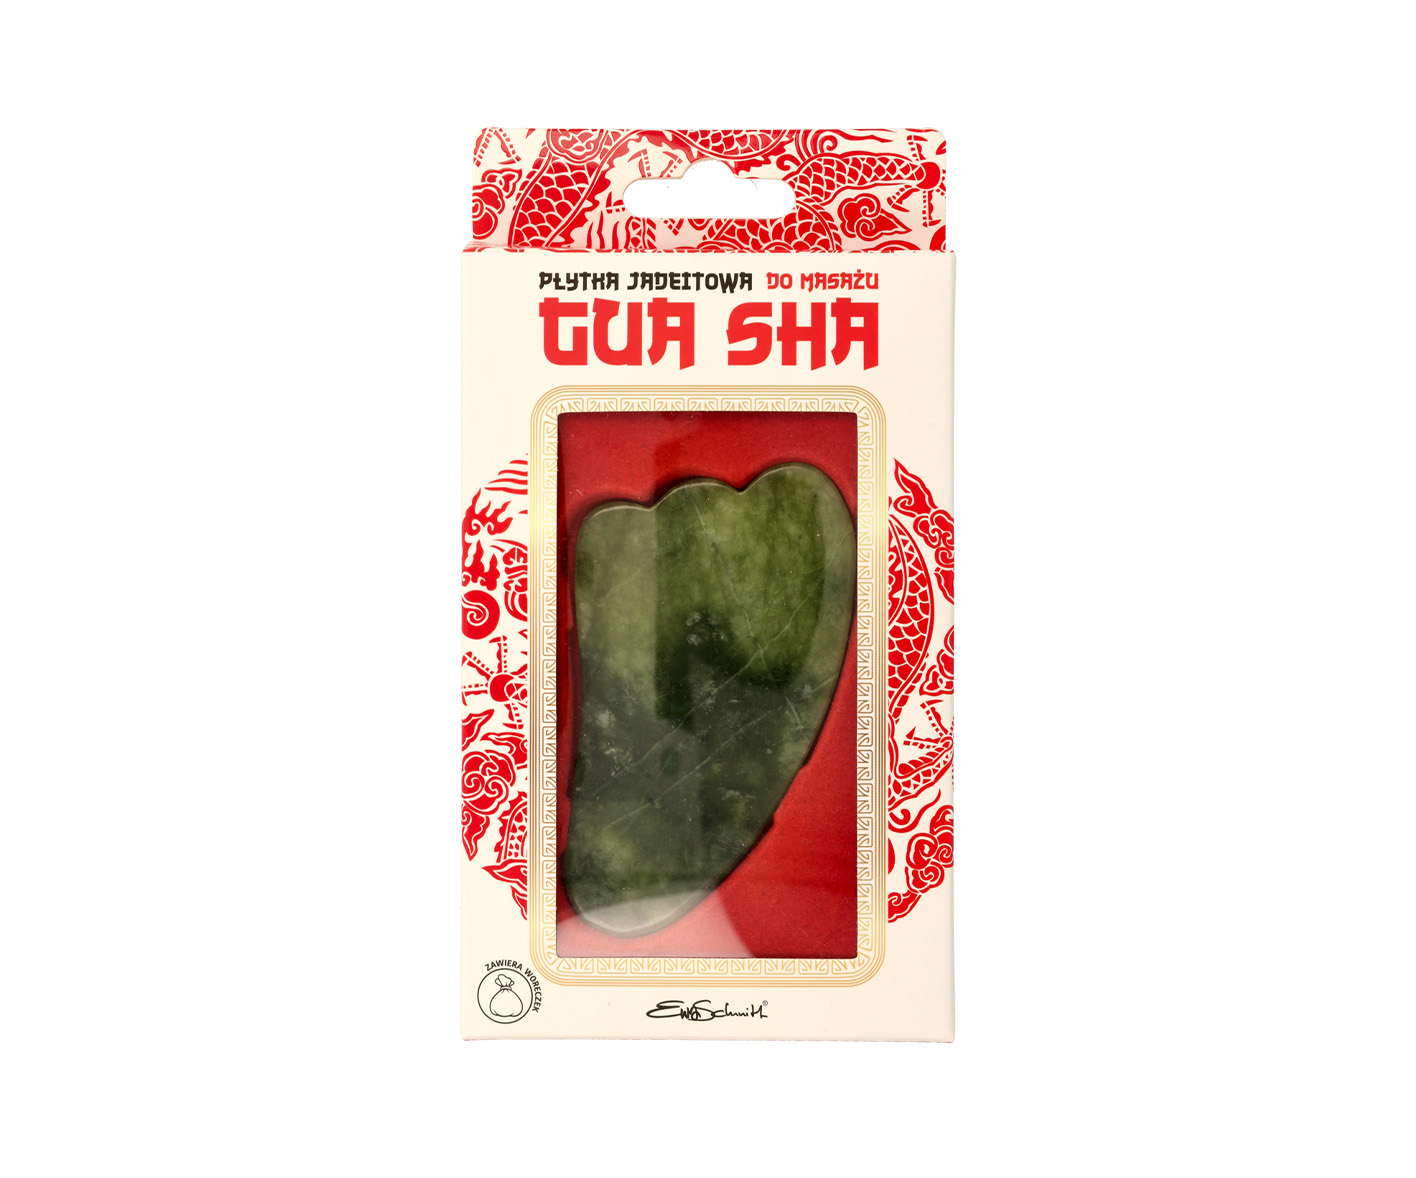 EWA SCHMITT, pietra Gua Sha con giada verde